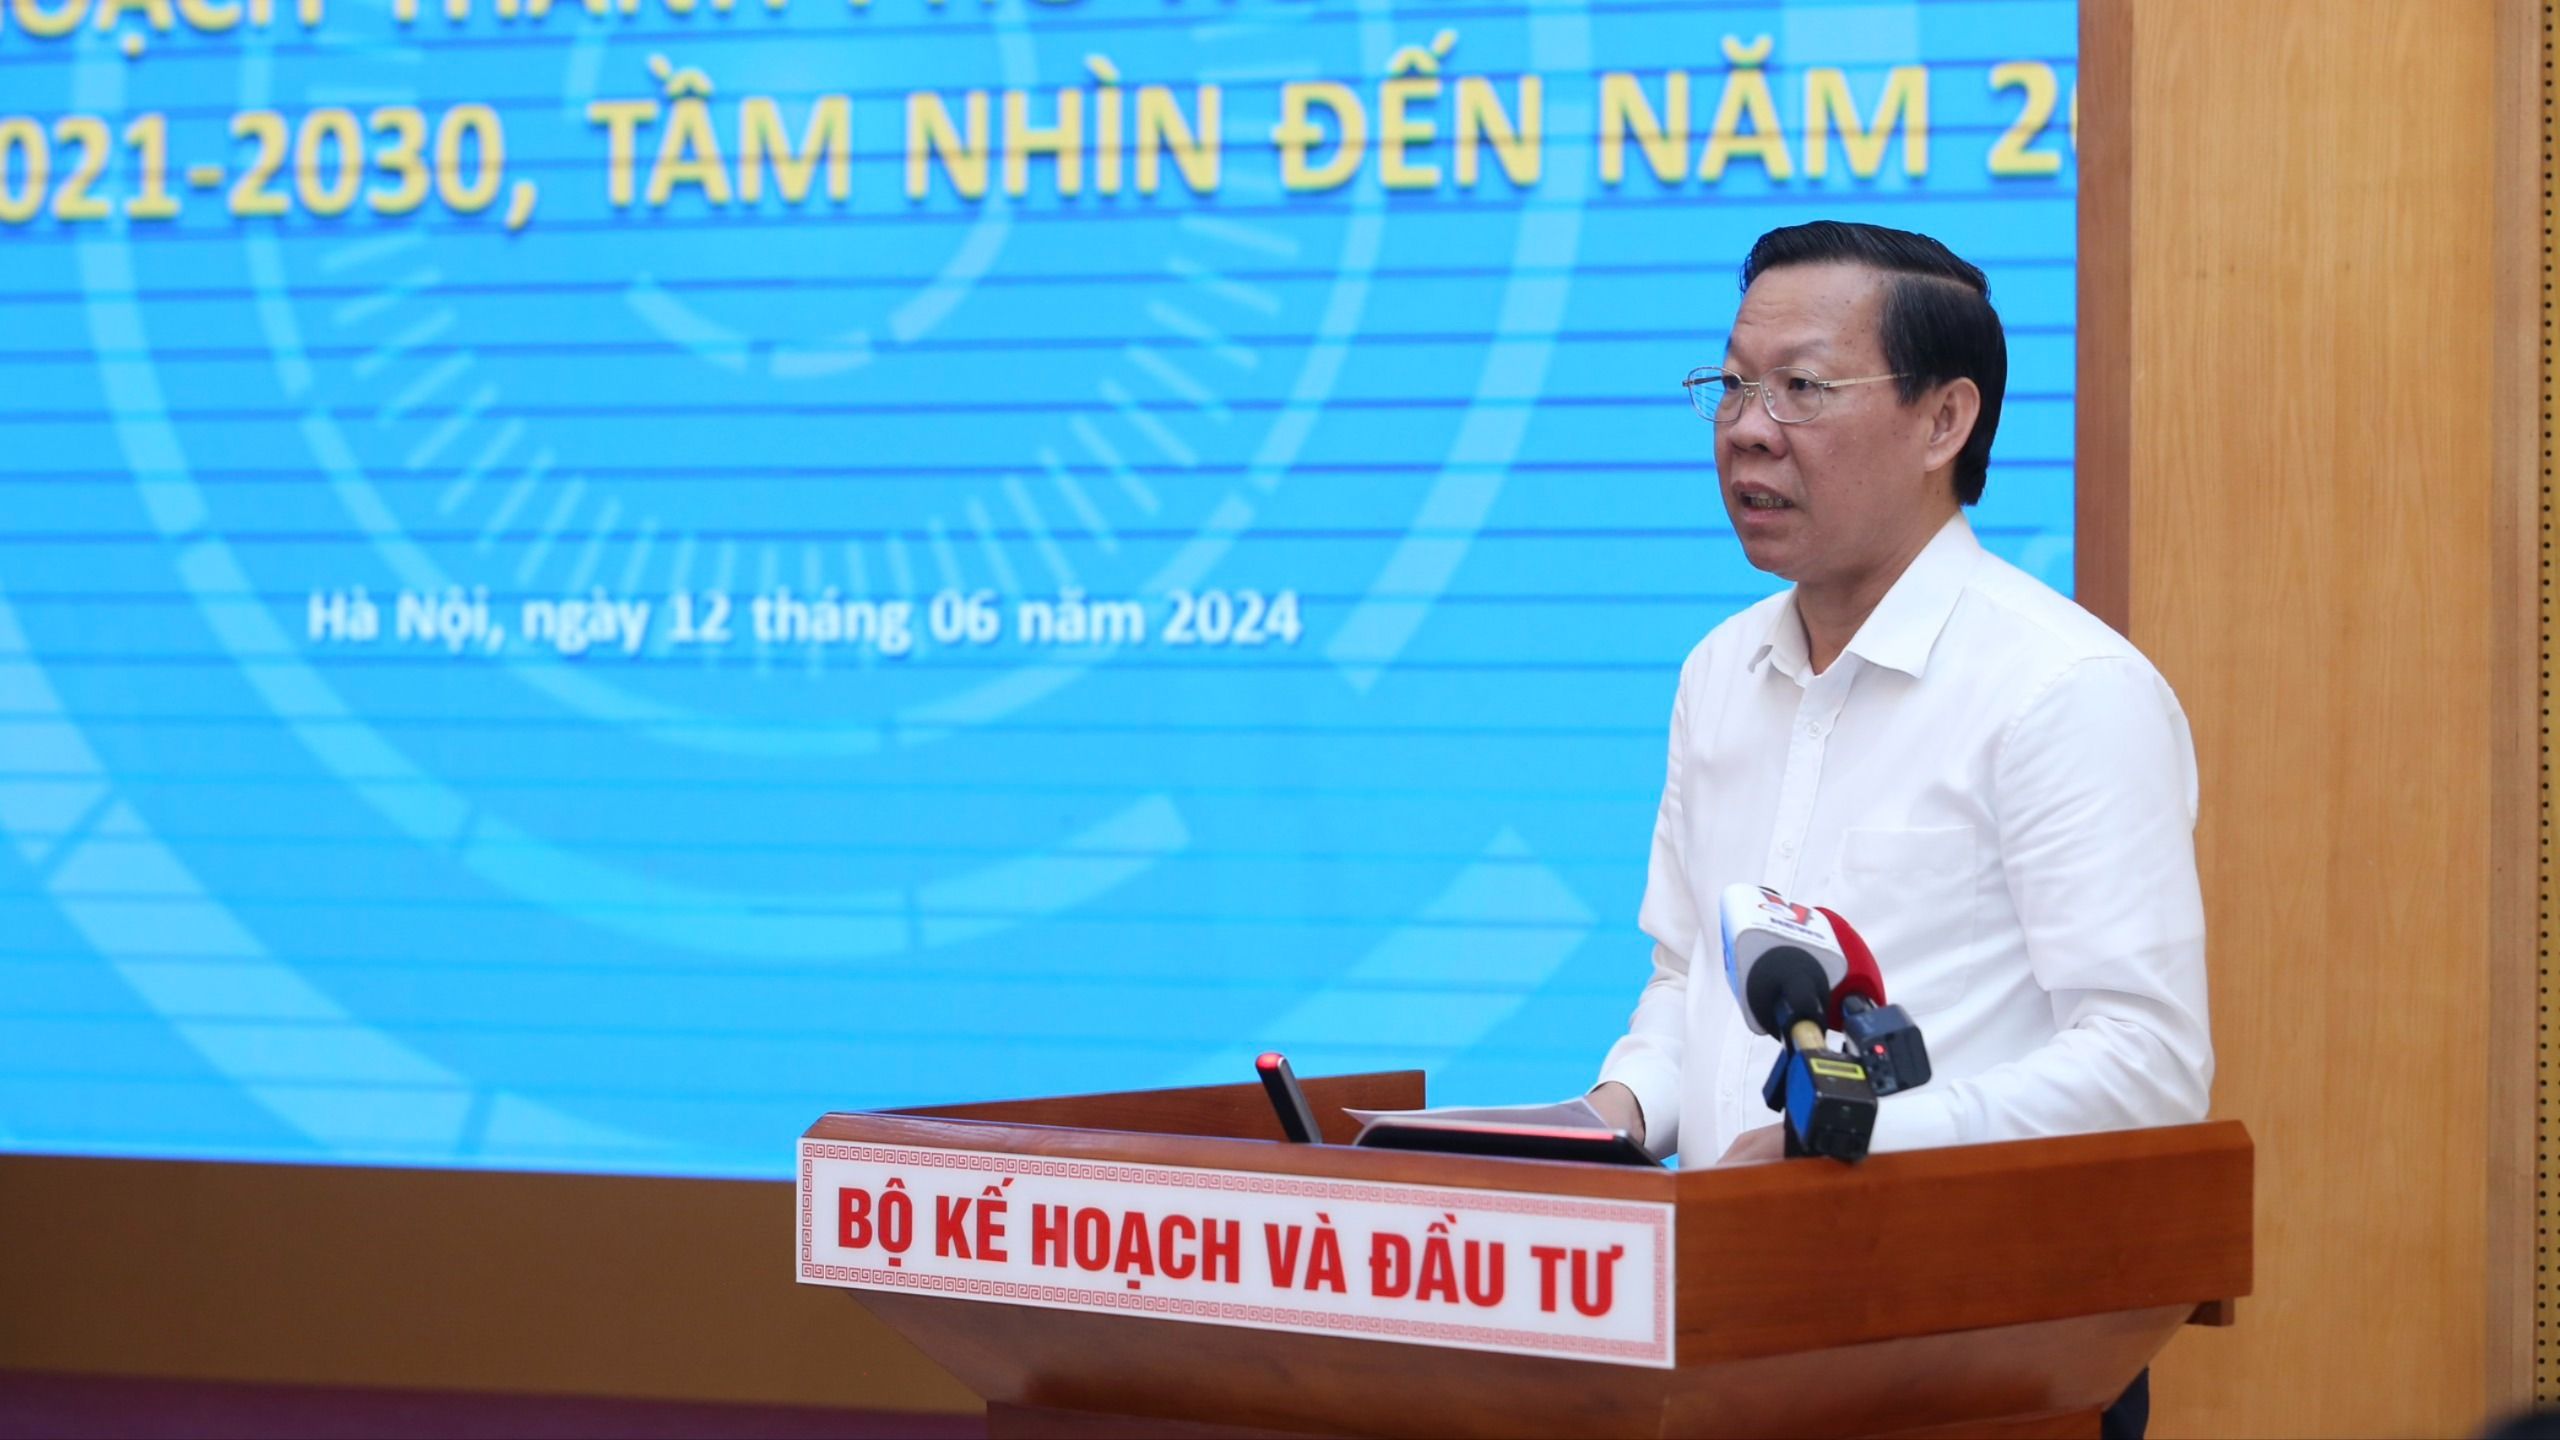 Đồng chí Phan Văn Mãi, Chủ tịch UBND TP. Hồ Chí Minh phát biểu tại hội nghị.